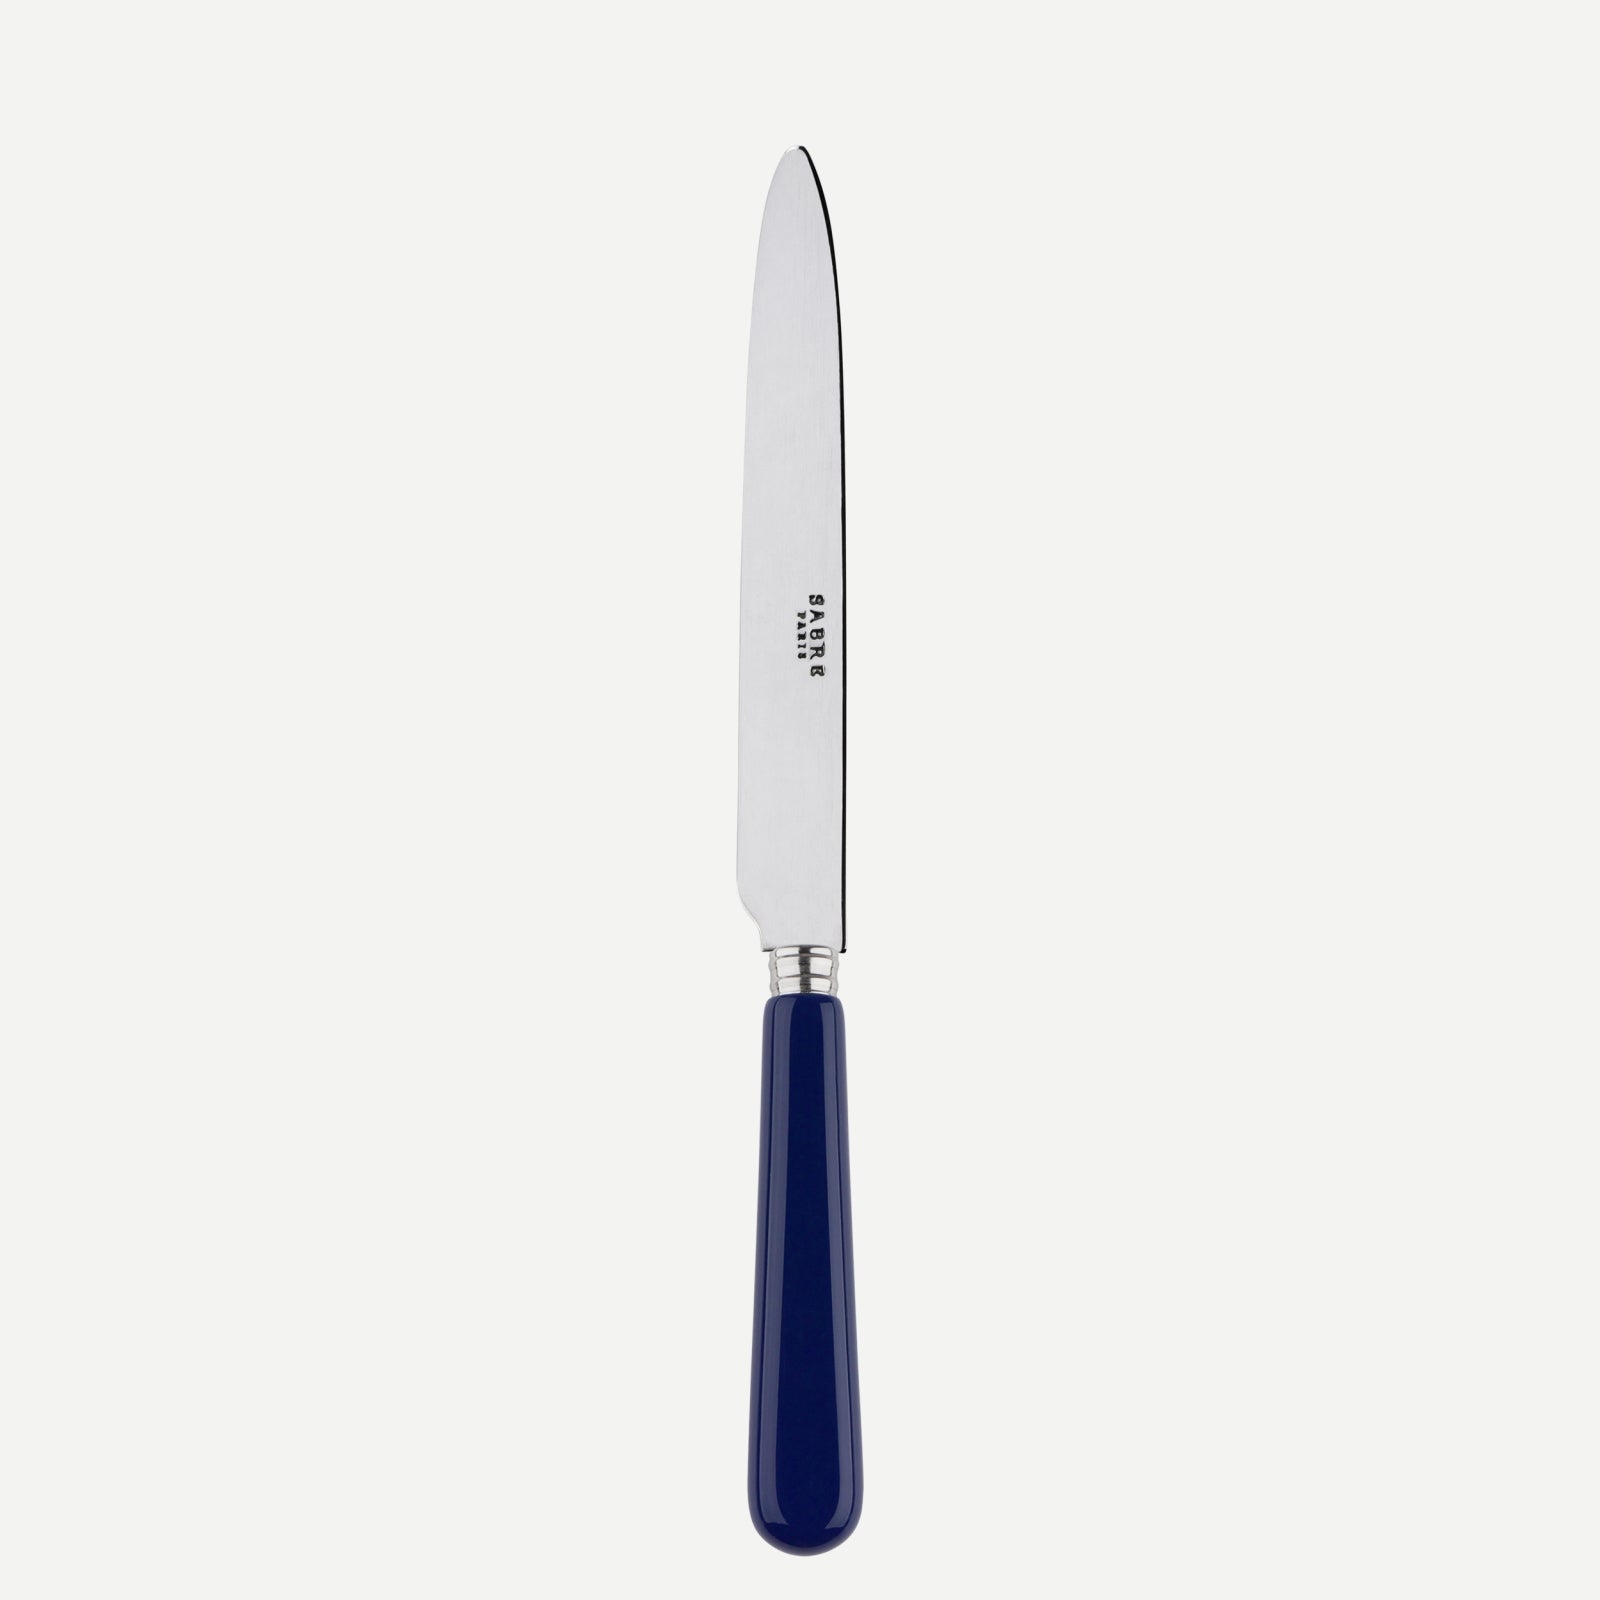 Dinner knife - Pop unis - Navy blue